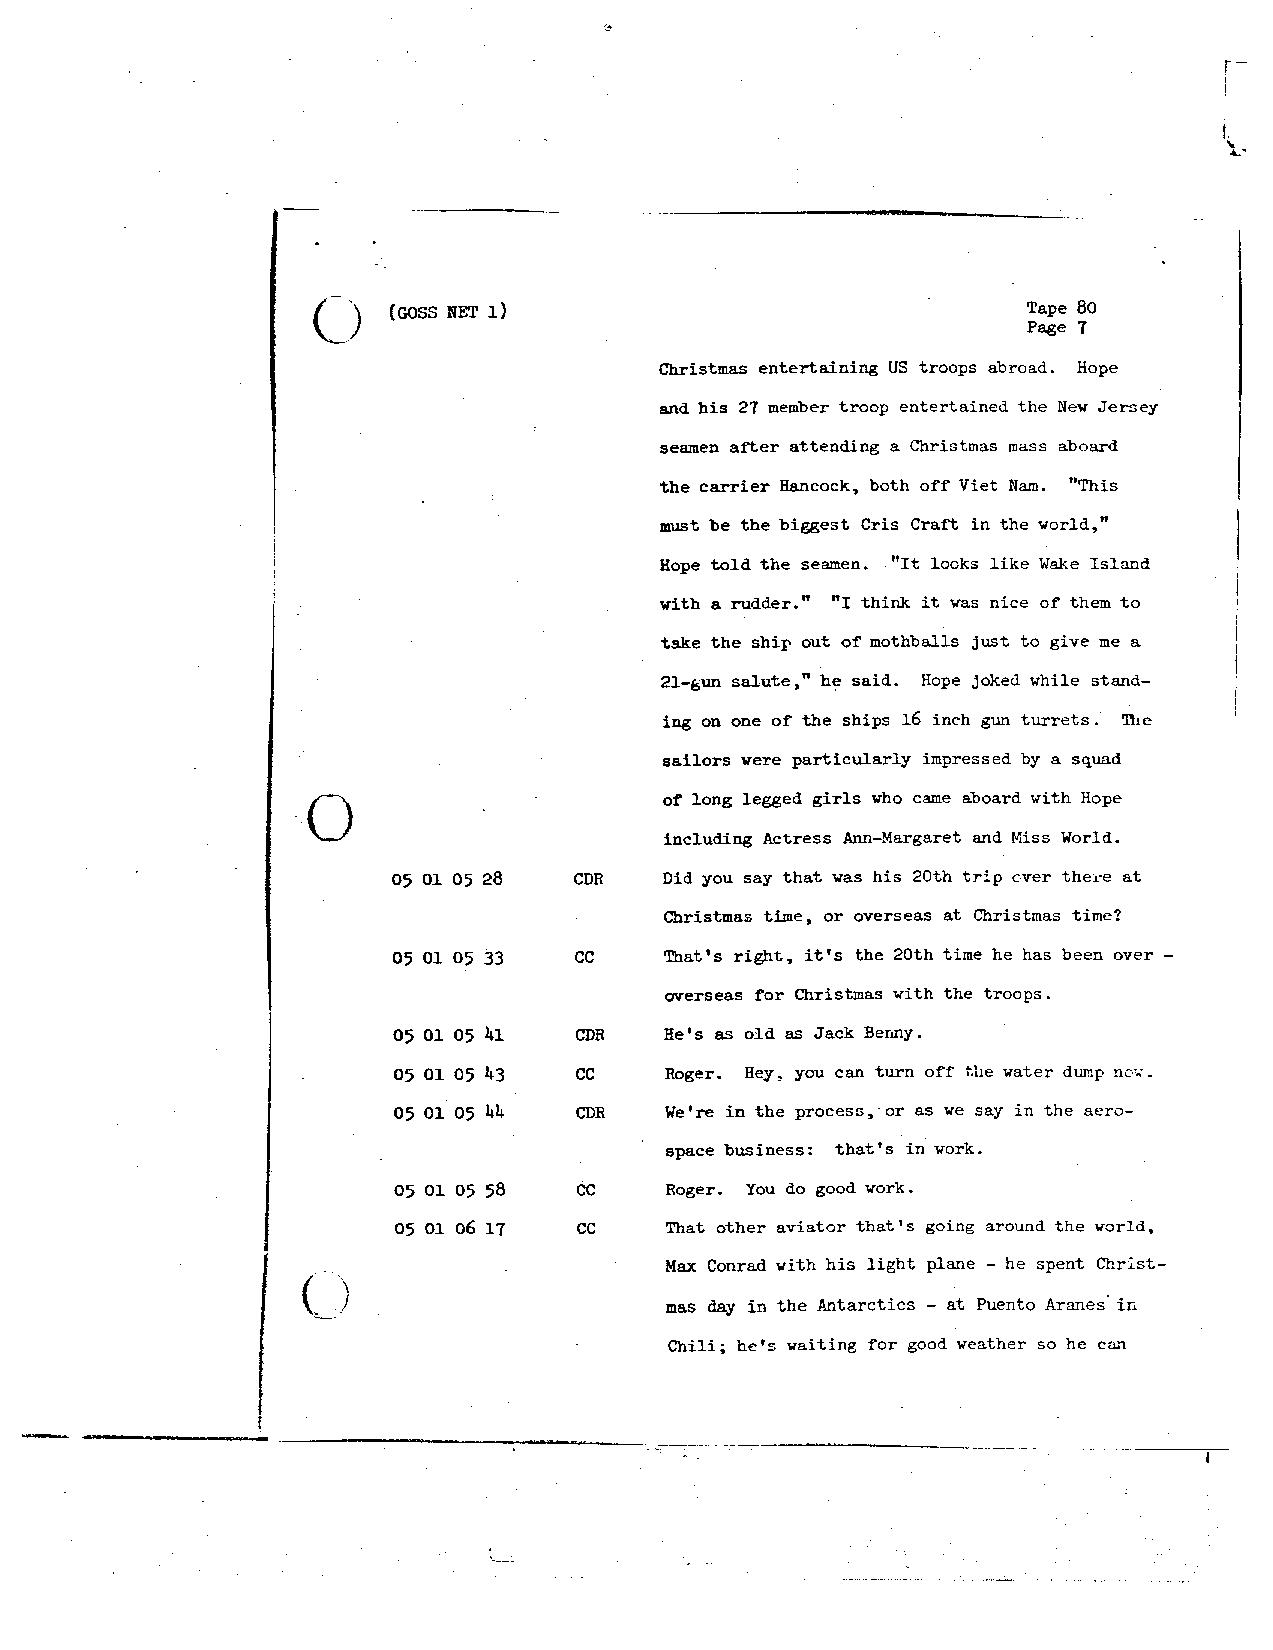 Page 664 of Apollo 8’s original transcript